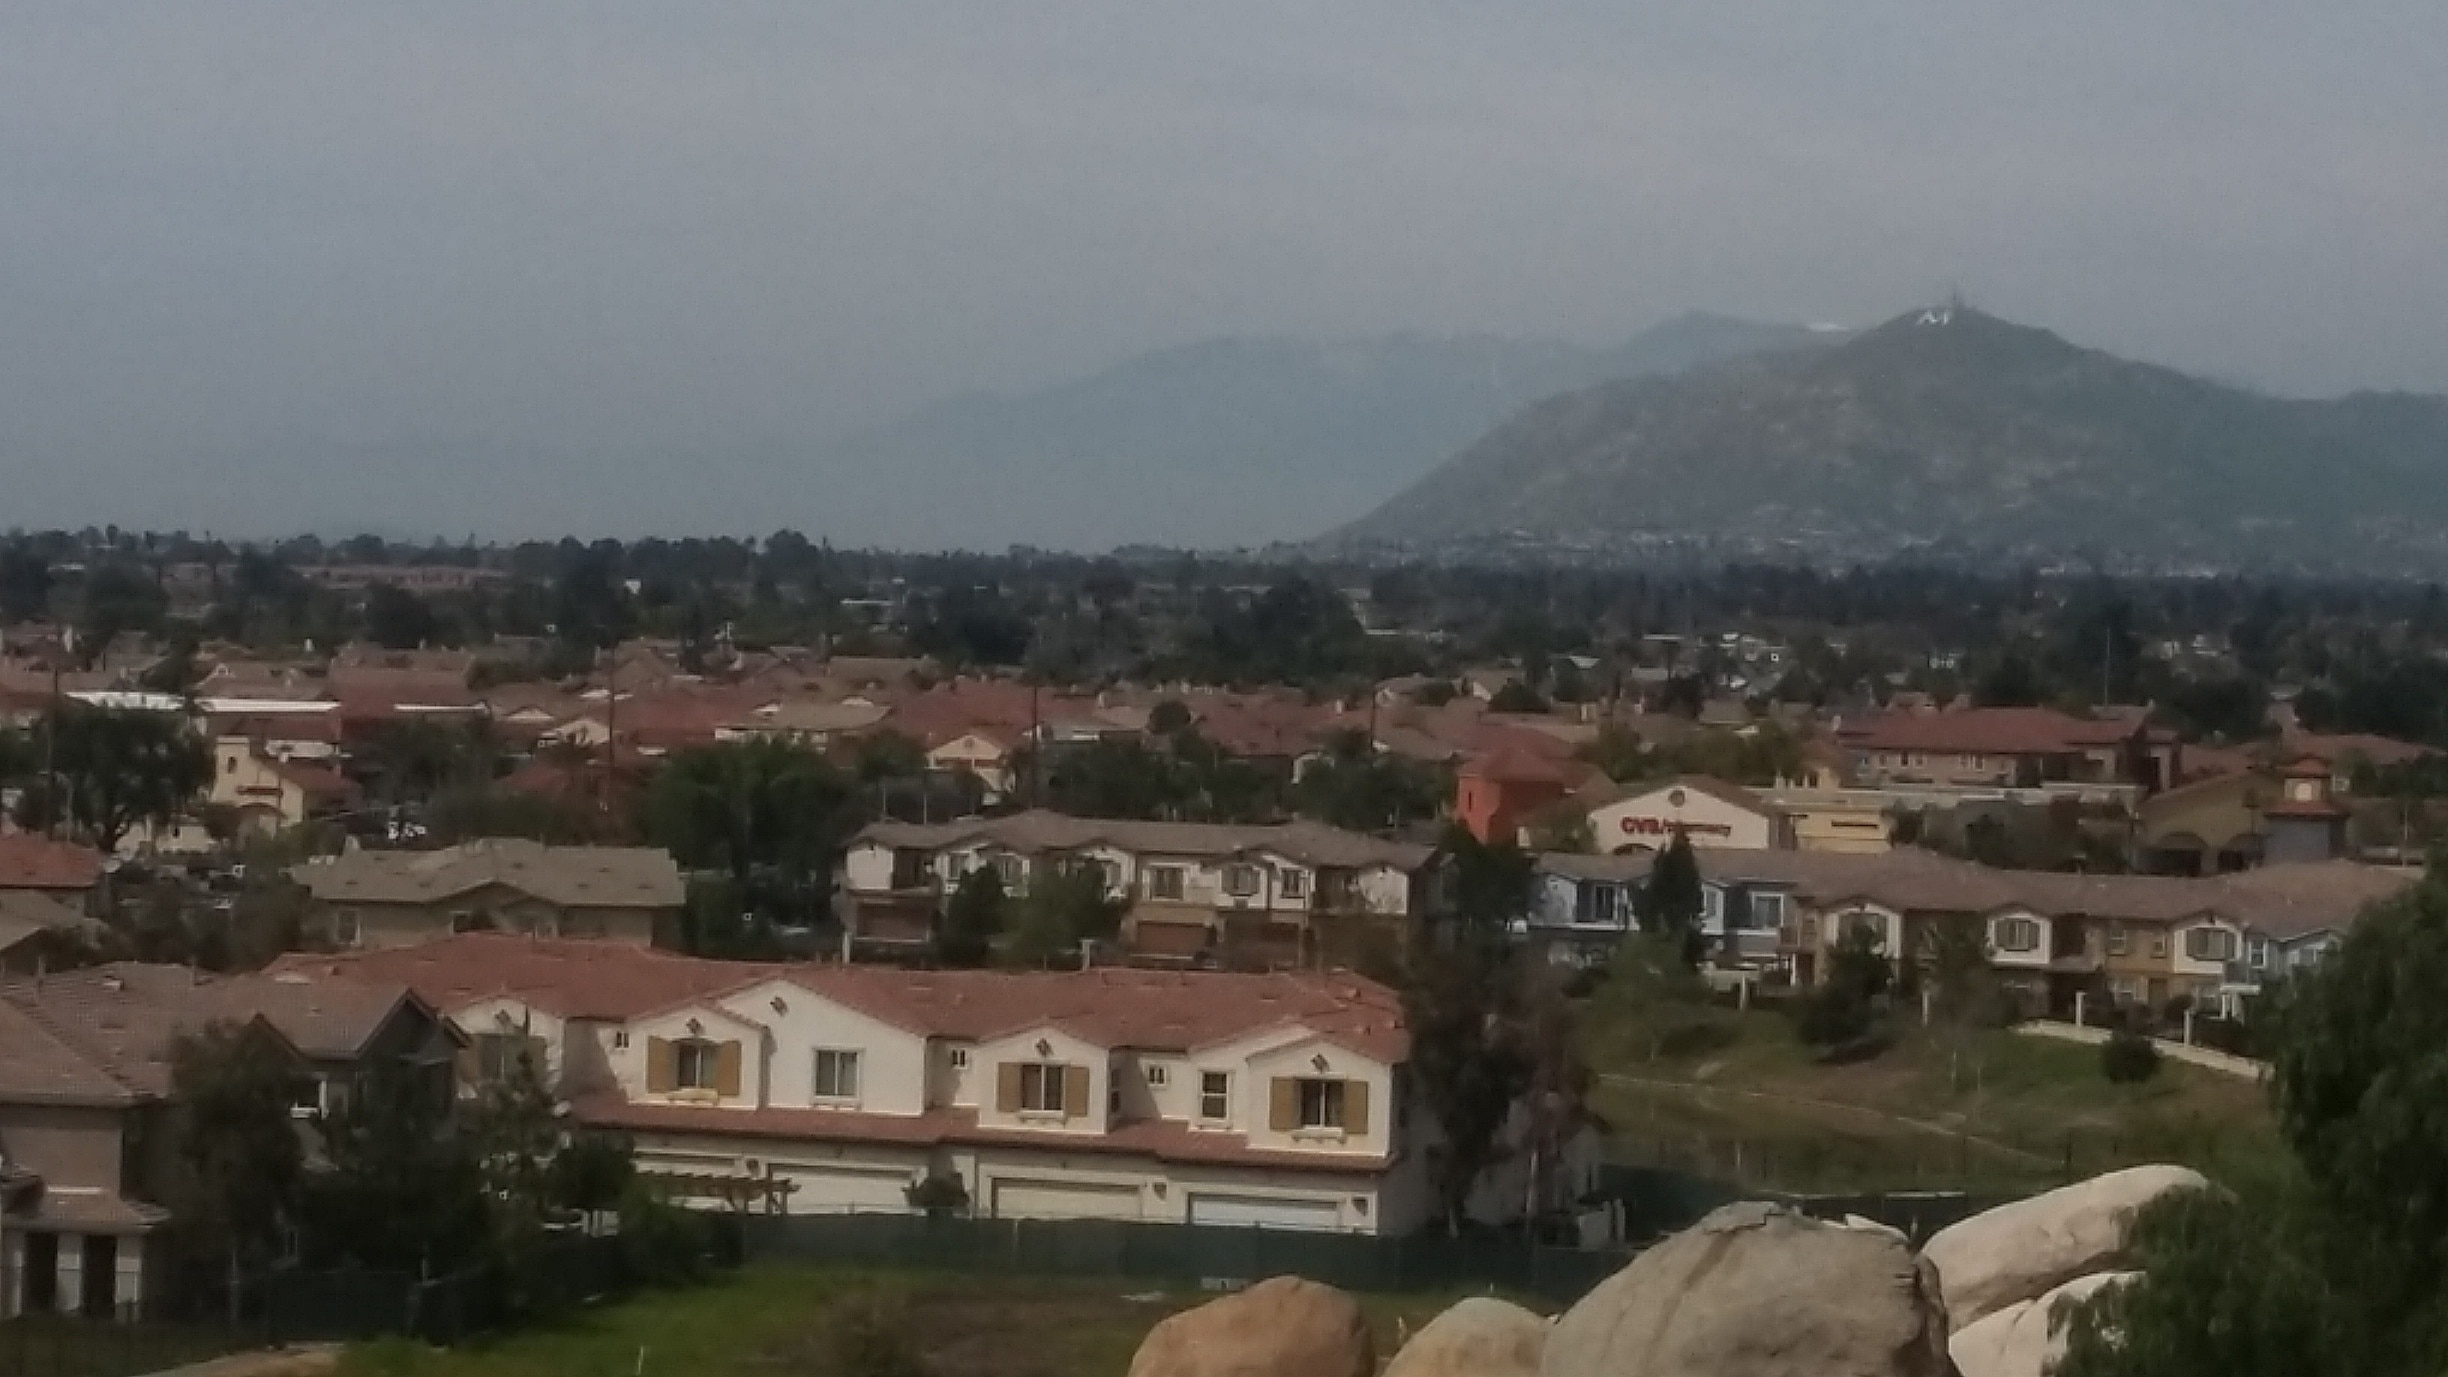 Moreno Valley, CA Vacation Rentals house rentals & more Vrbo